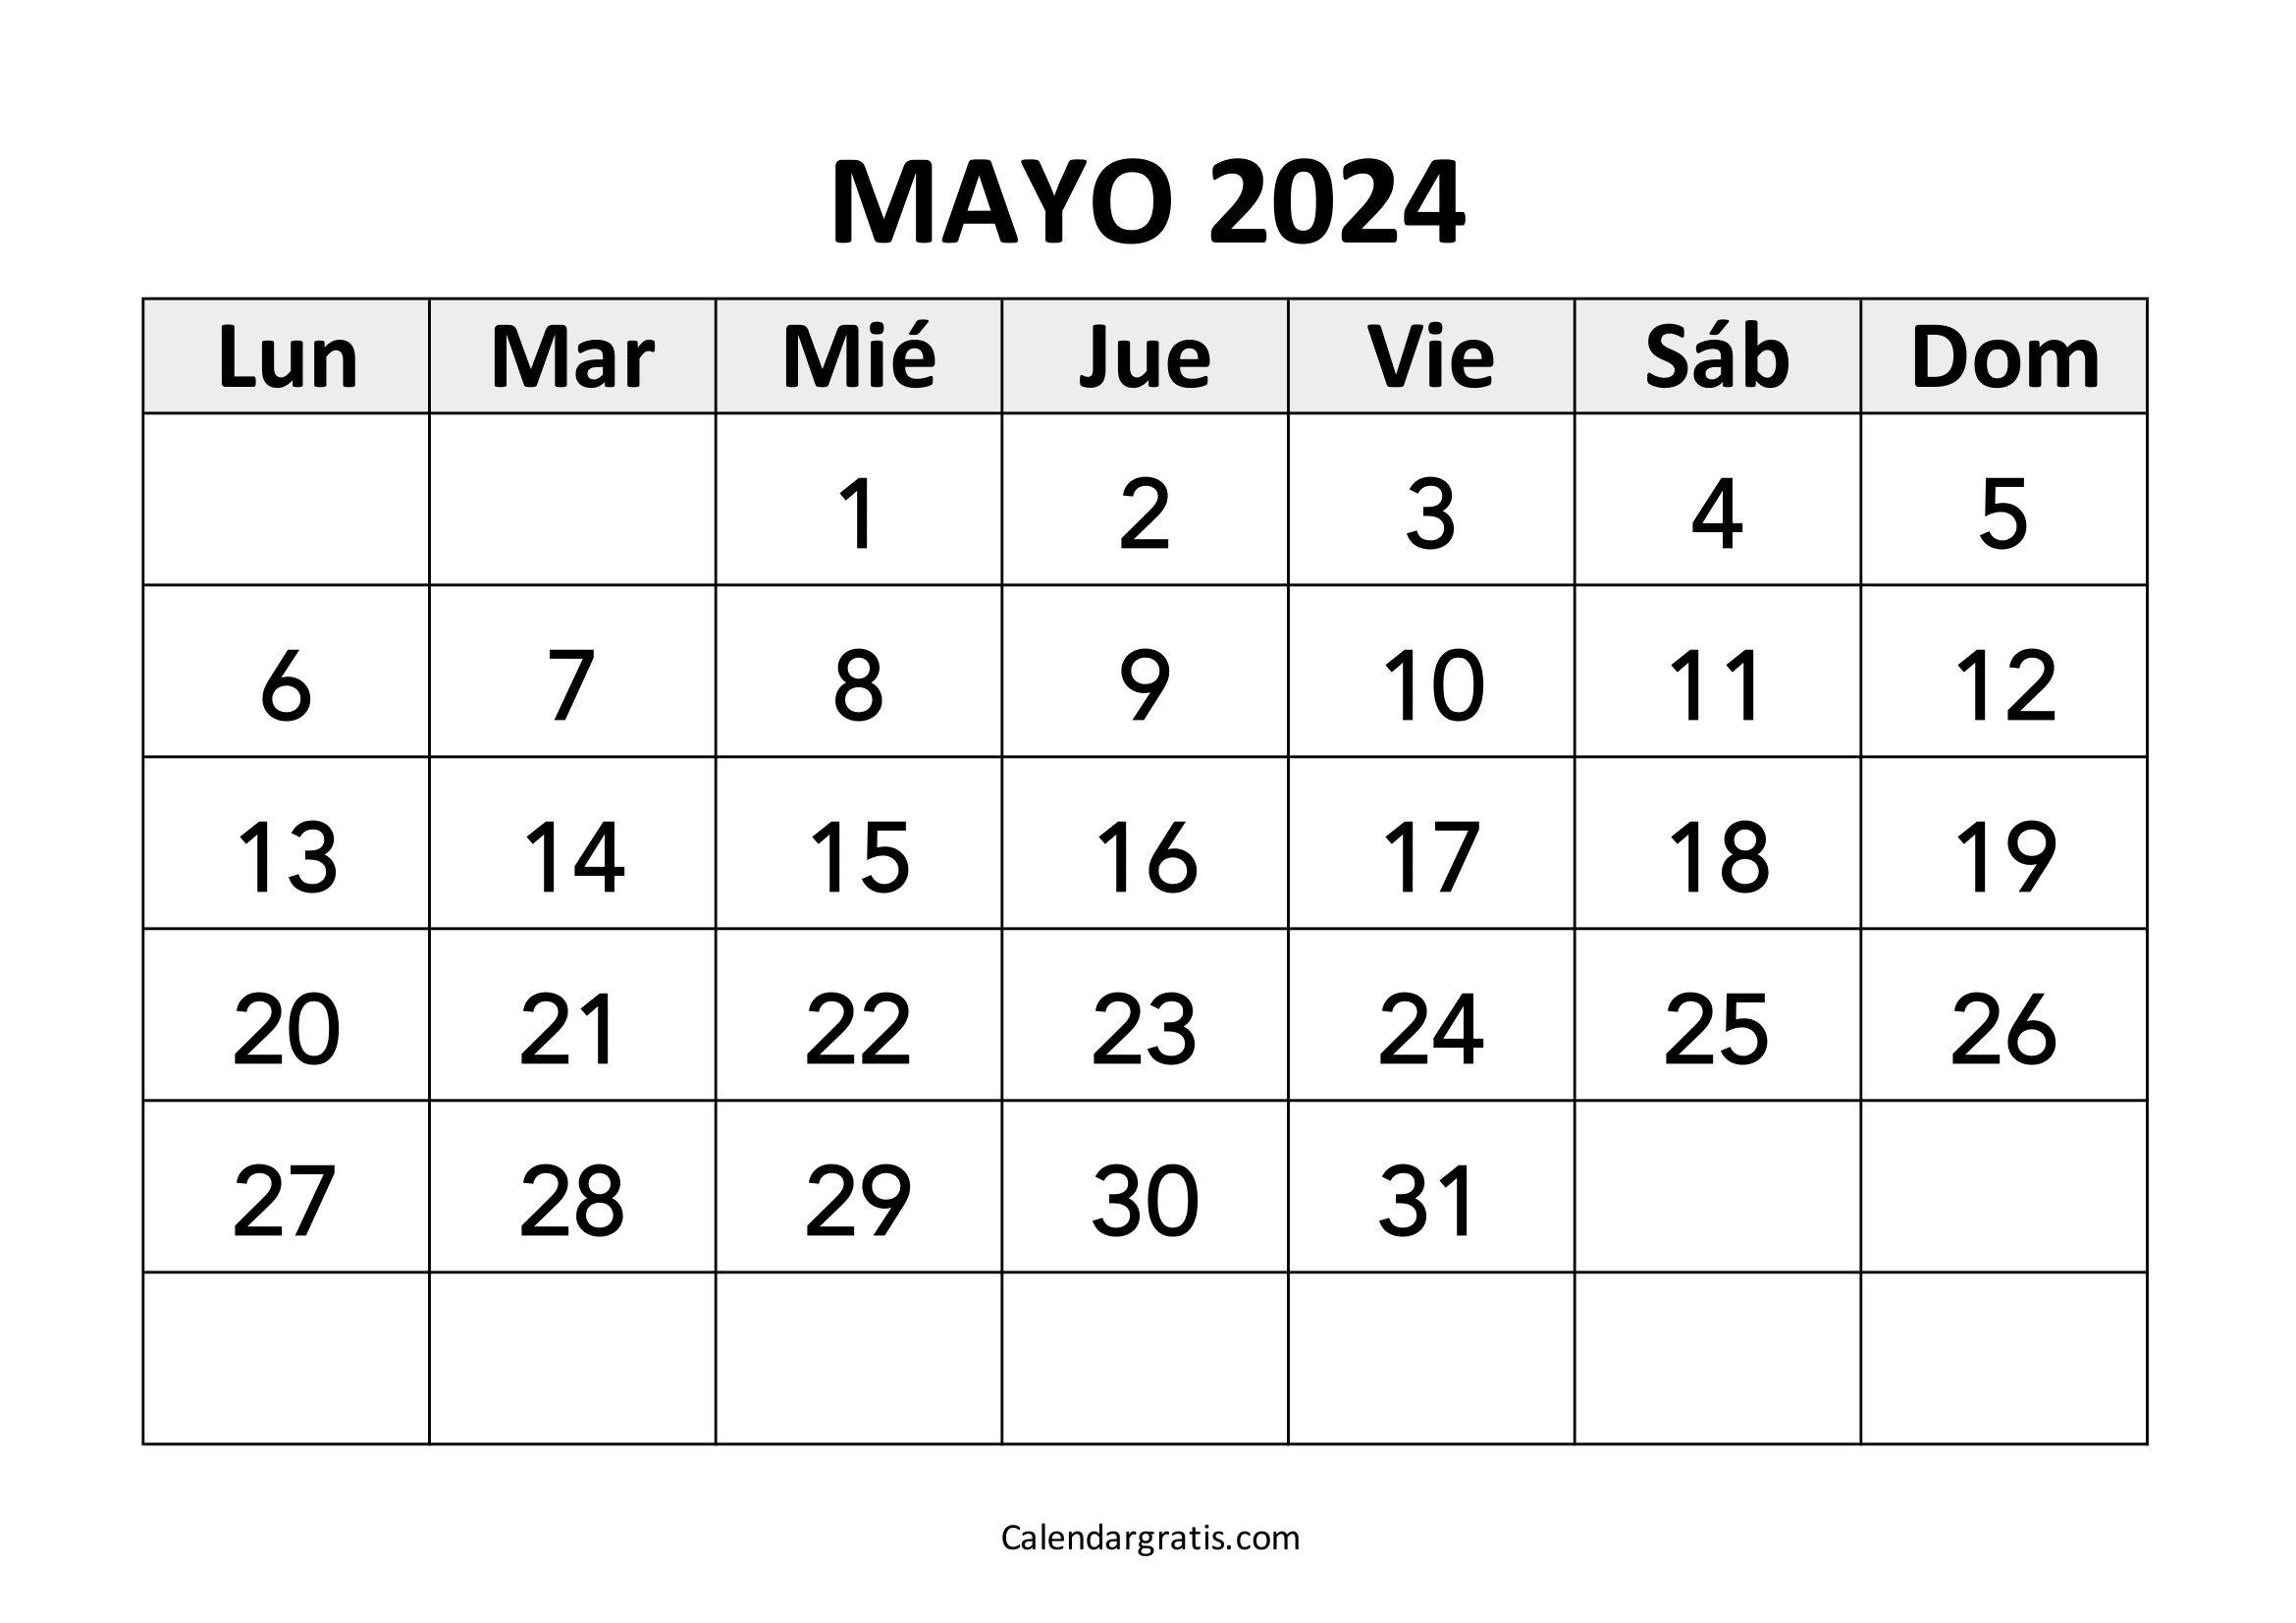 Calendario del mes de mayo 2024